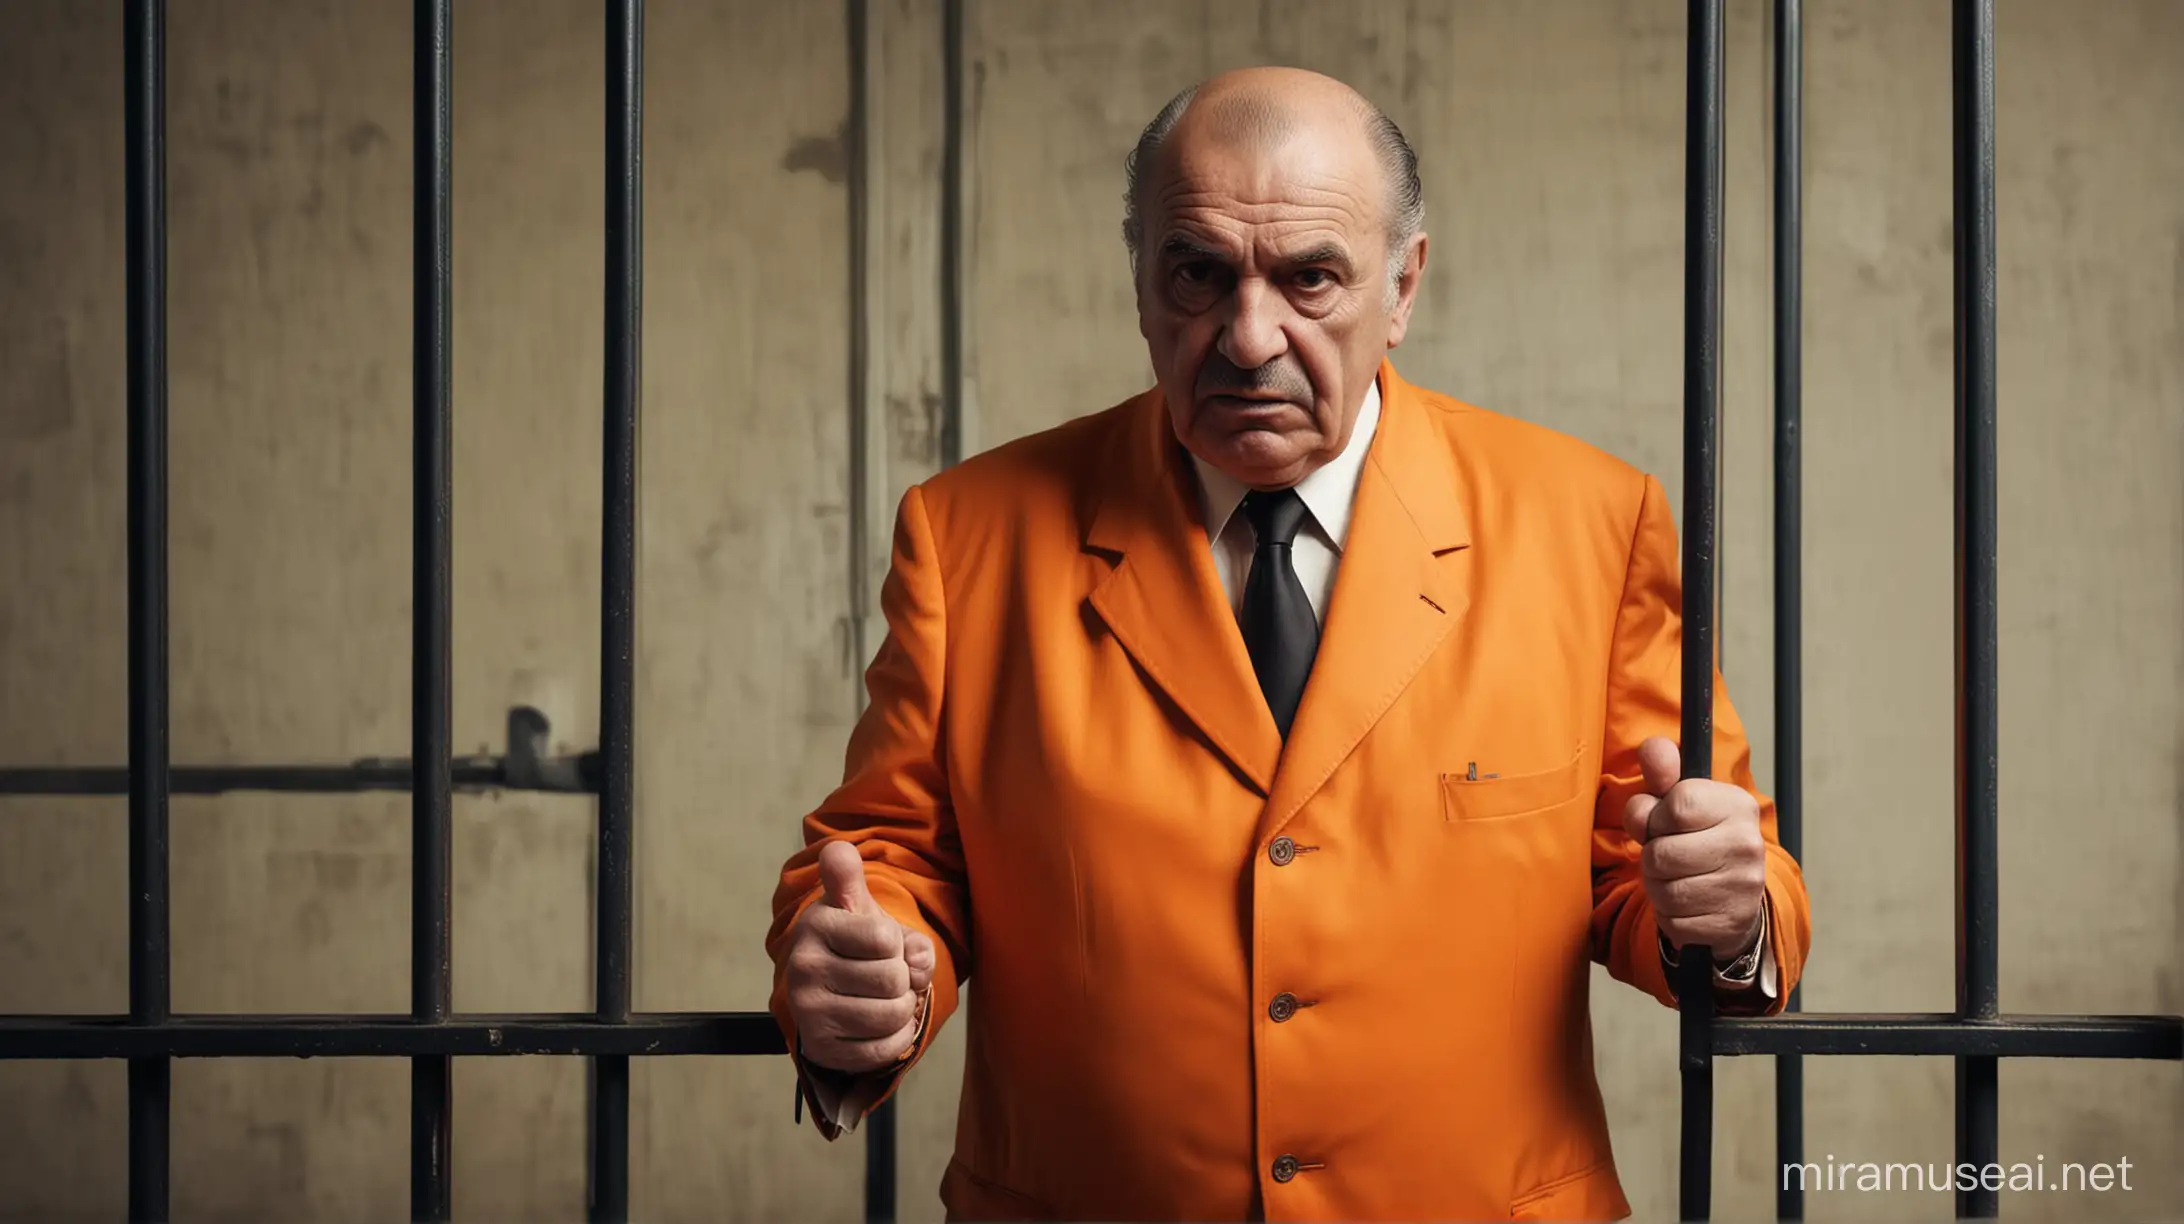 Mafia old boss is arrested in prison. He is wearing orange suit